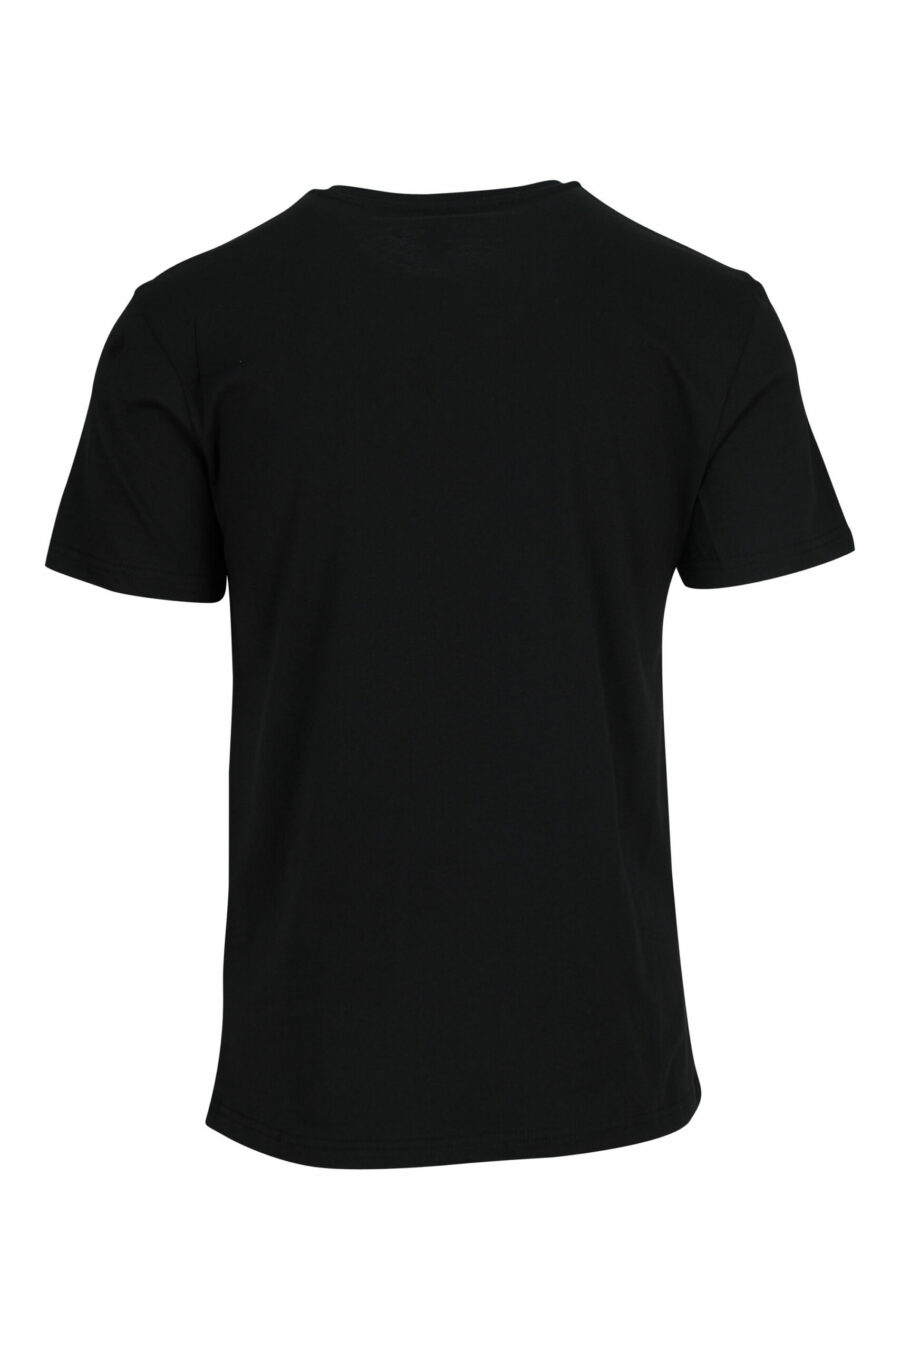 T-shirt noir avec mini-logo multicolore - 667113672588 1 scaled